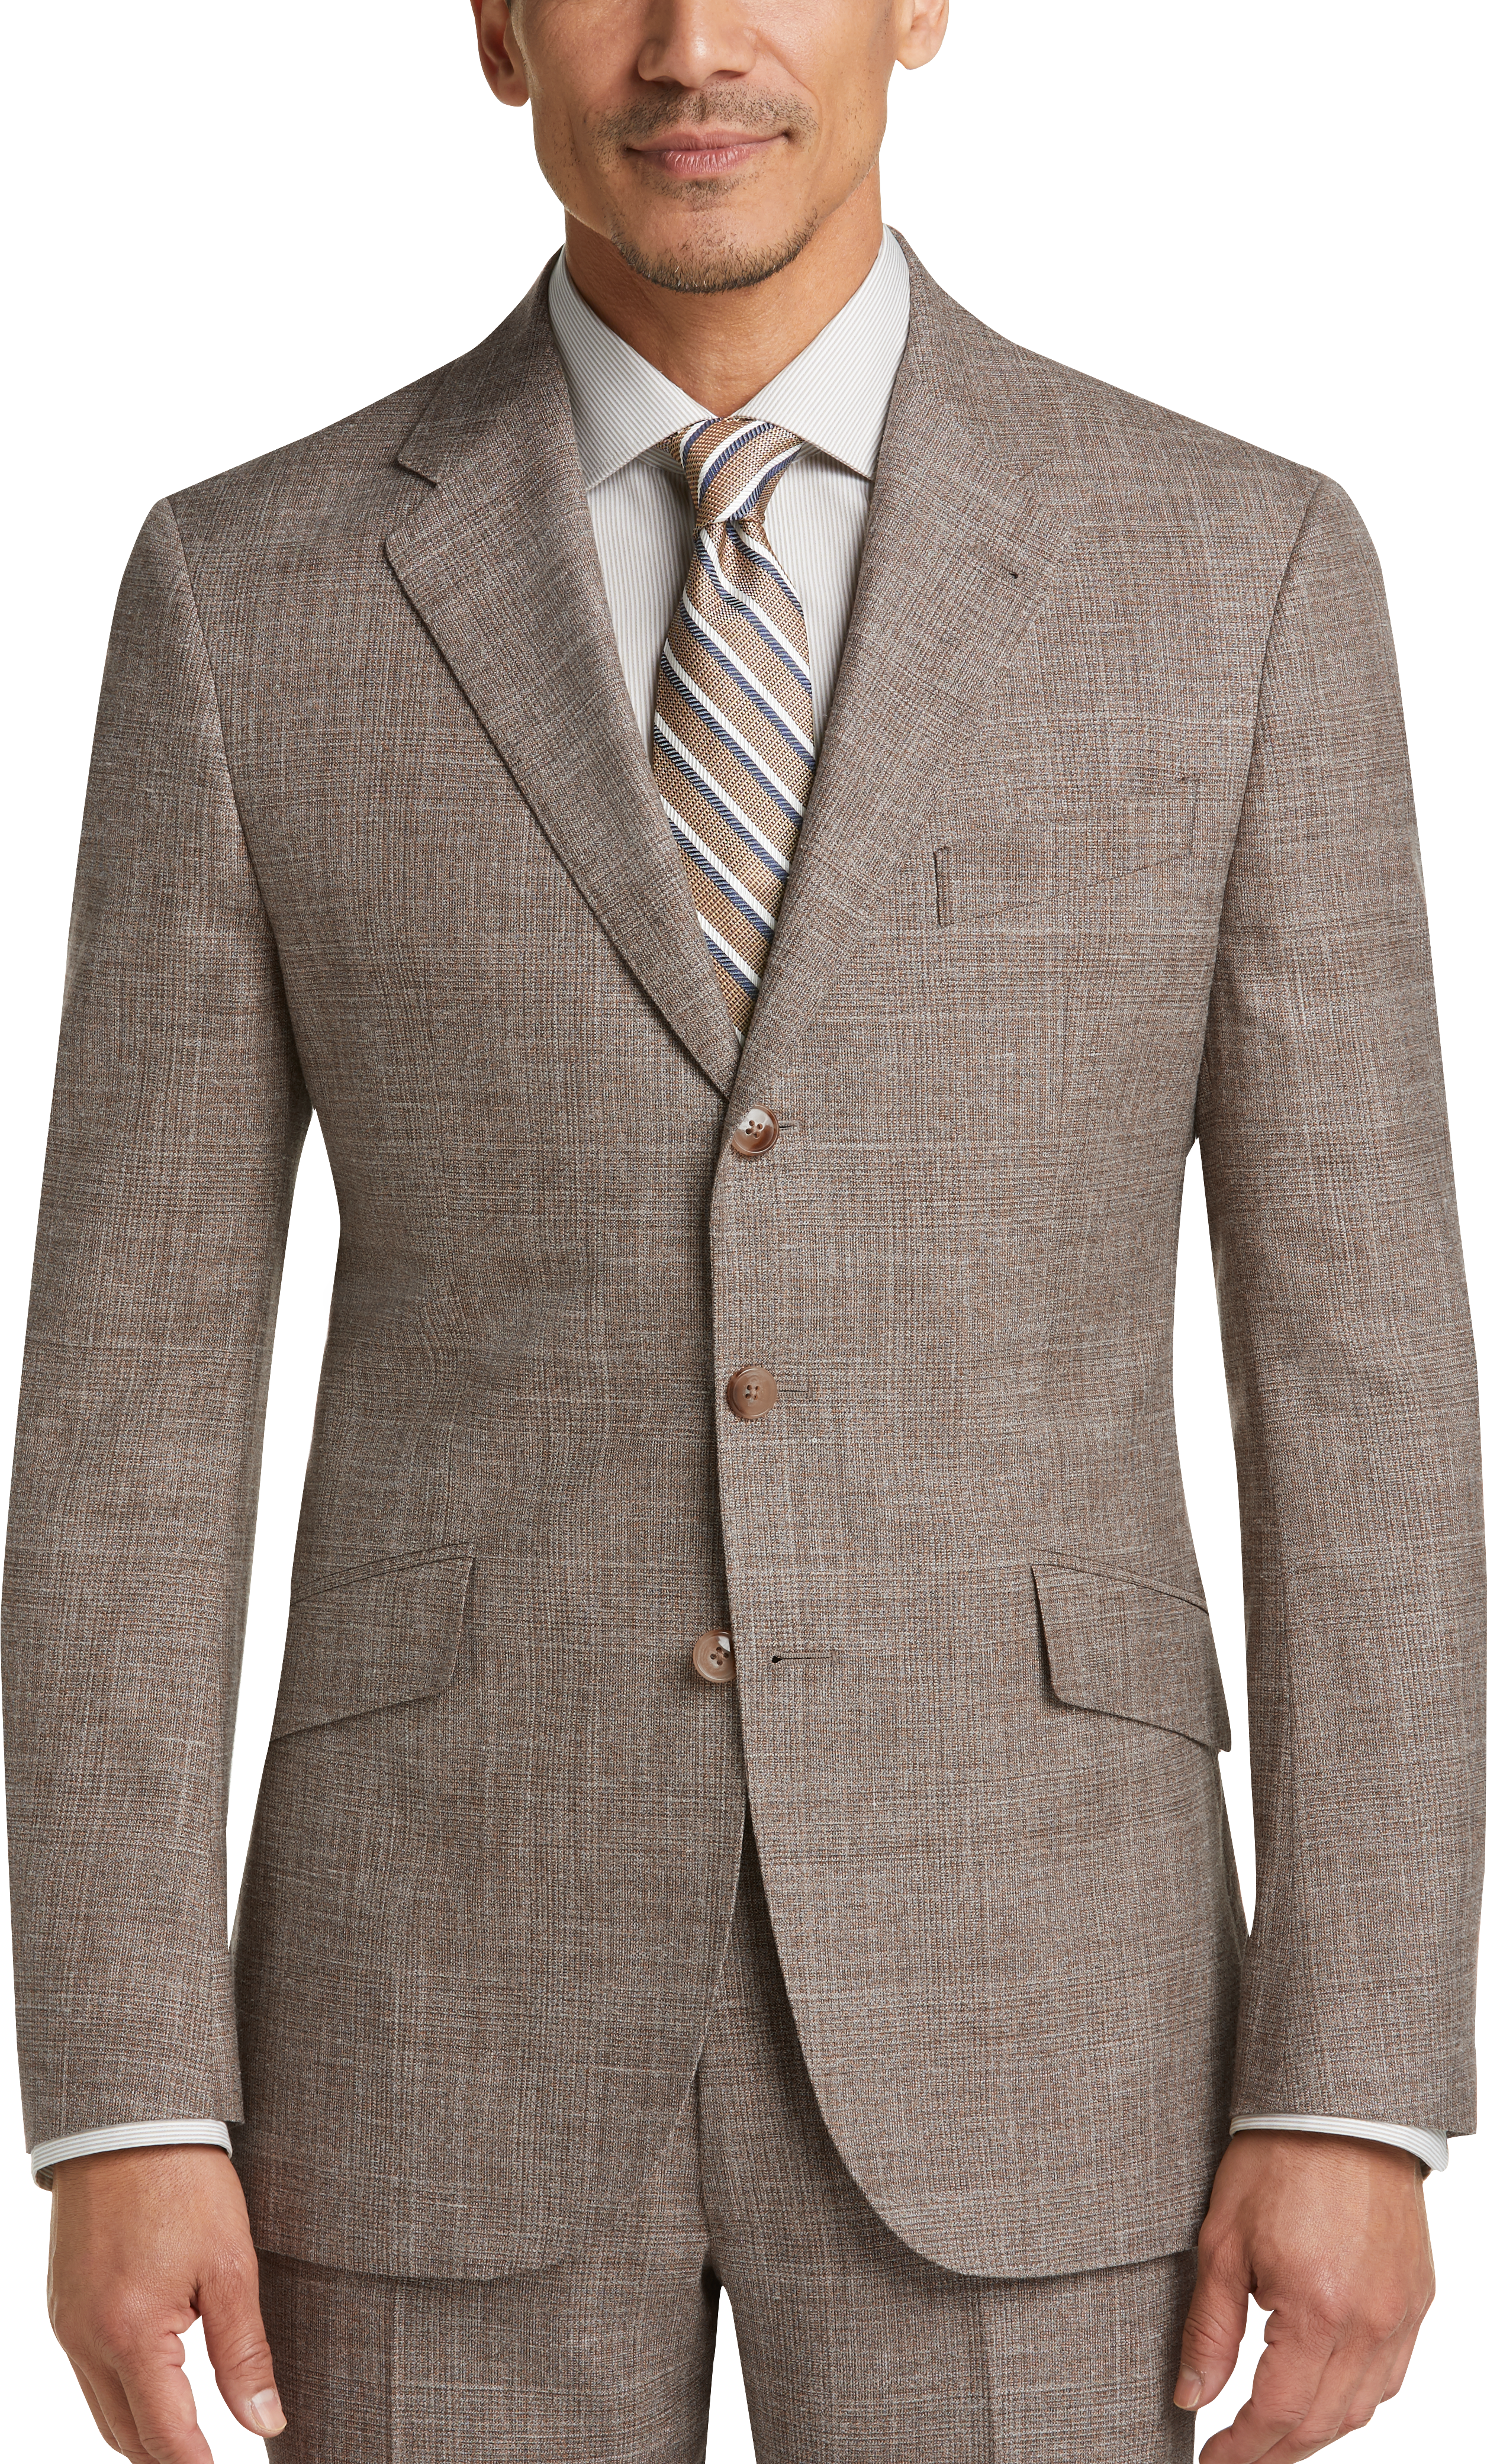 Joseph Abboud Limited Edition Tan Plaid Slim Fit Suit - Men's Sale ...